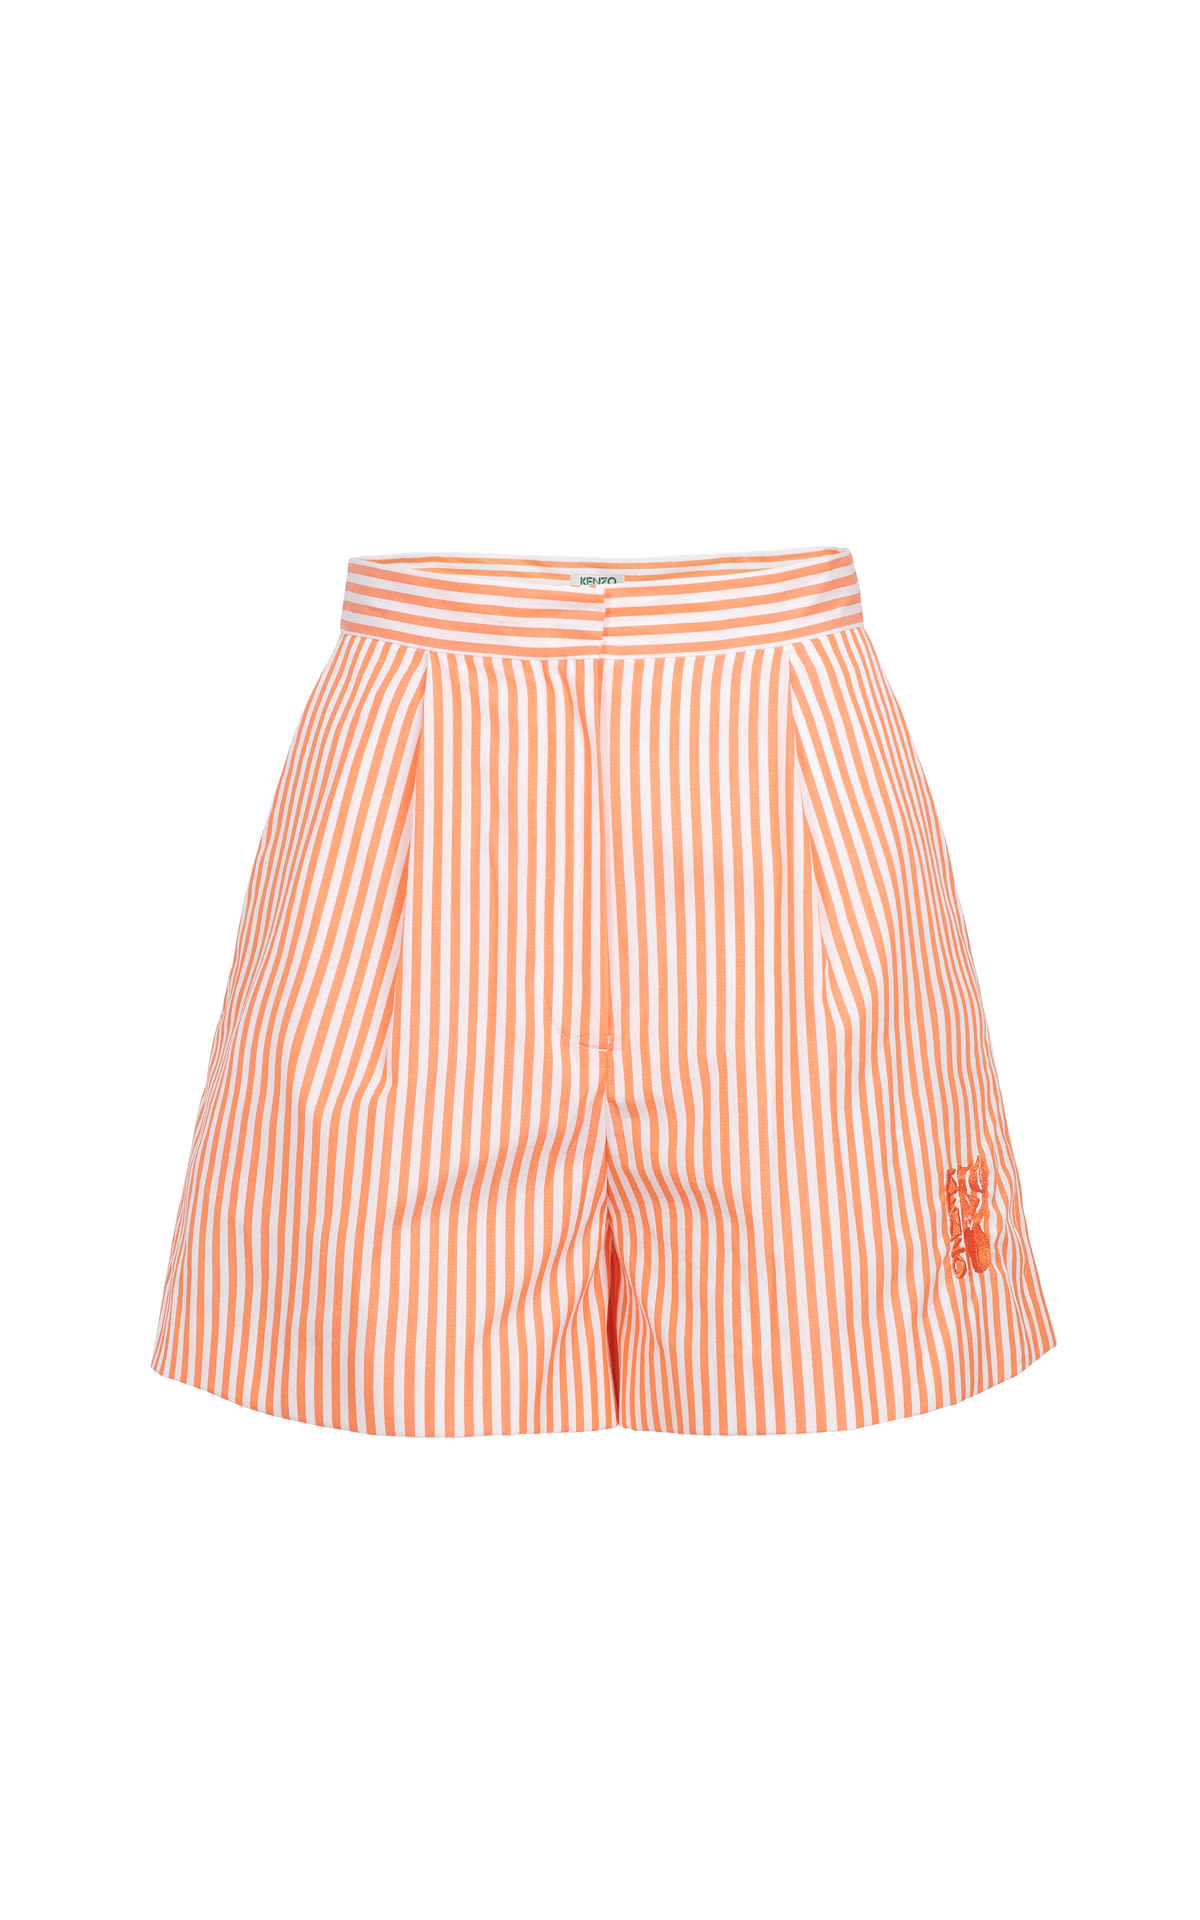 Pantalón corto rayas naranjas Kenzo